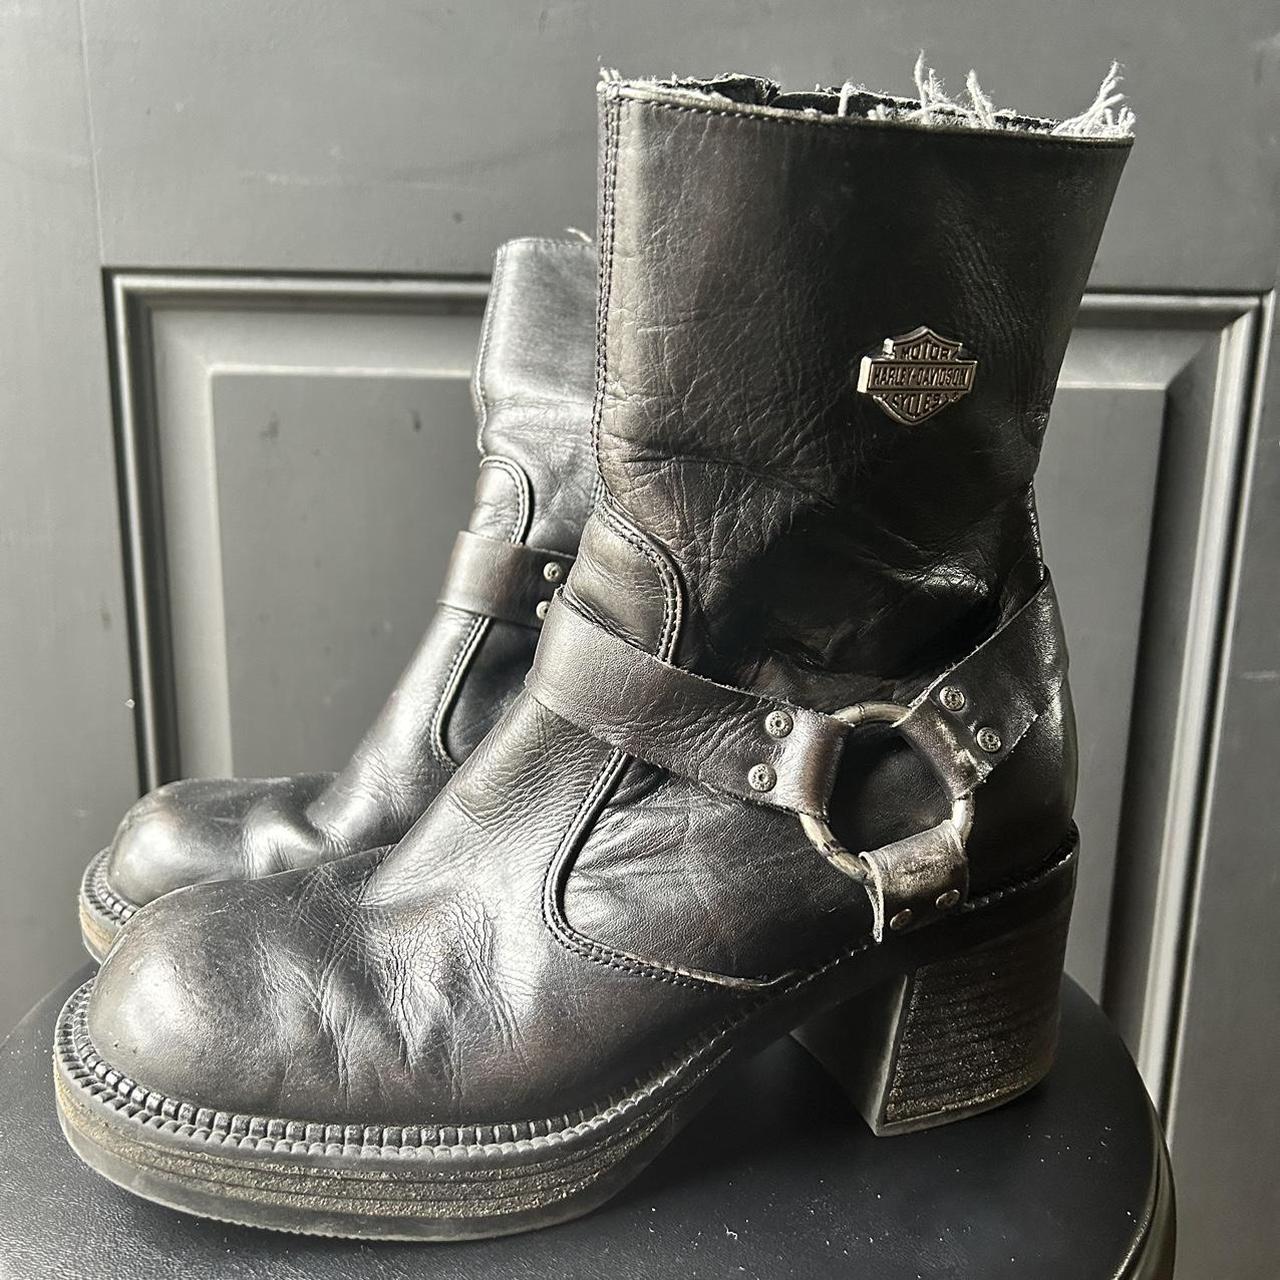 Vintage Harley Davidson Leather Boots Size 7 US... - Depop